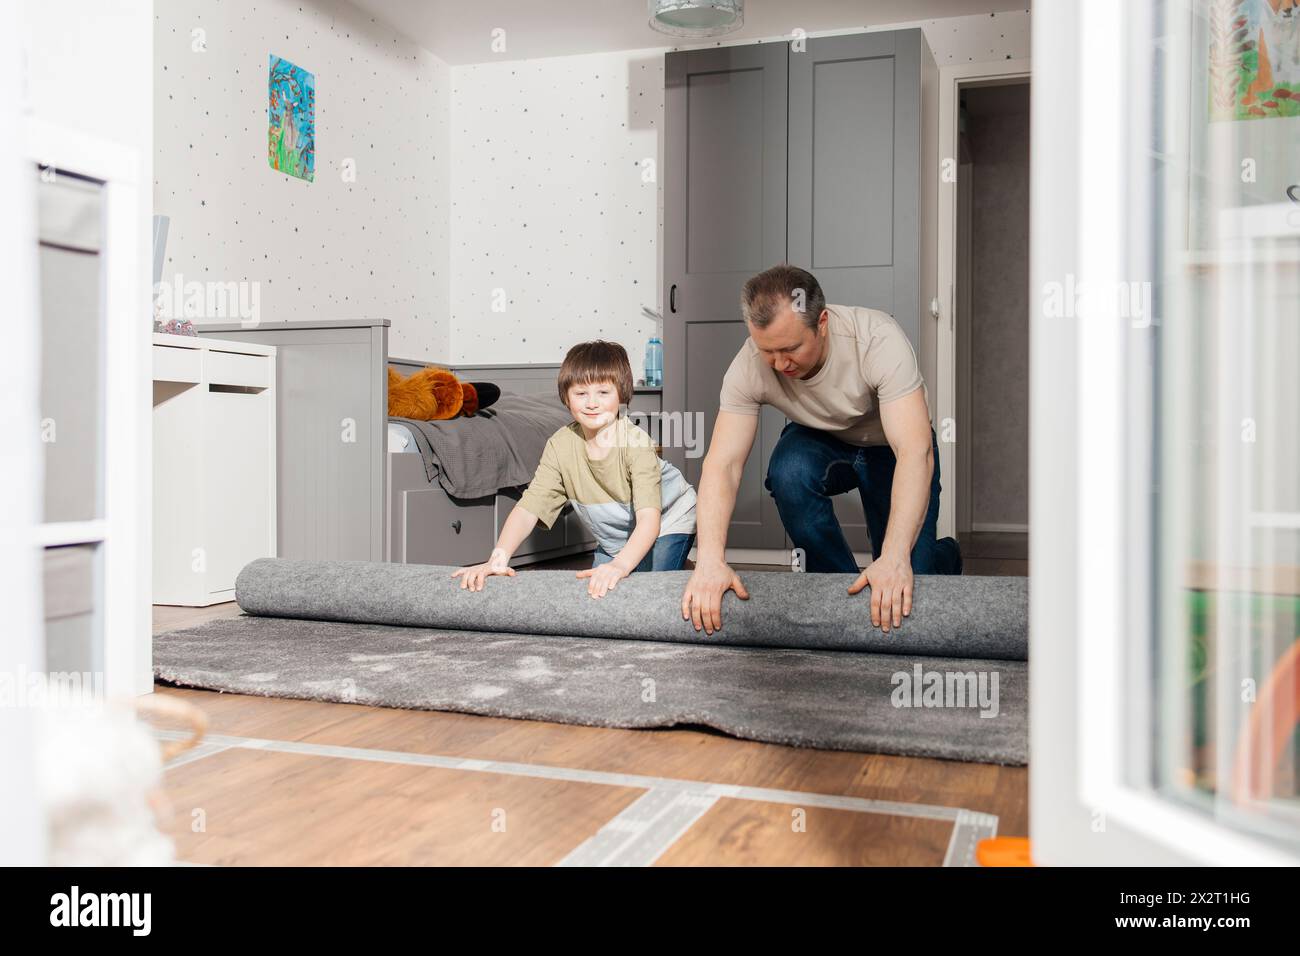 Junge, der Vater beim Ausrollen des Teppichs auf dem Boden zu Hause hilft Stockfoto